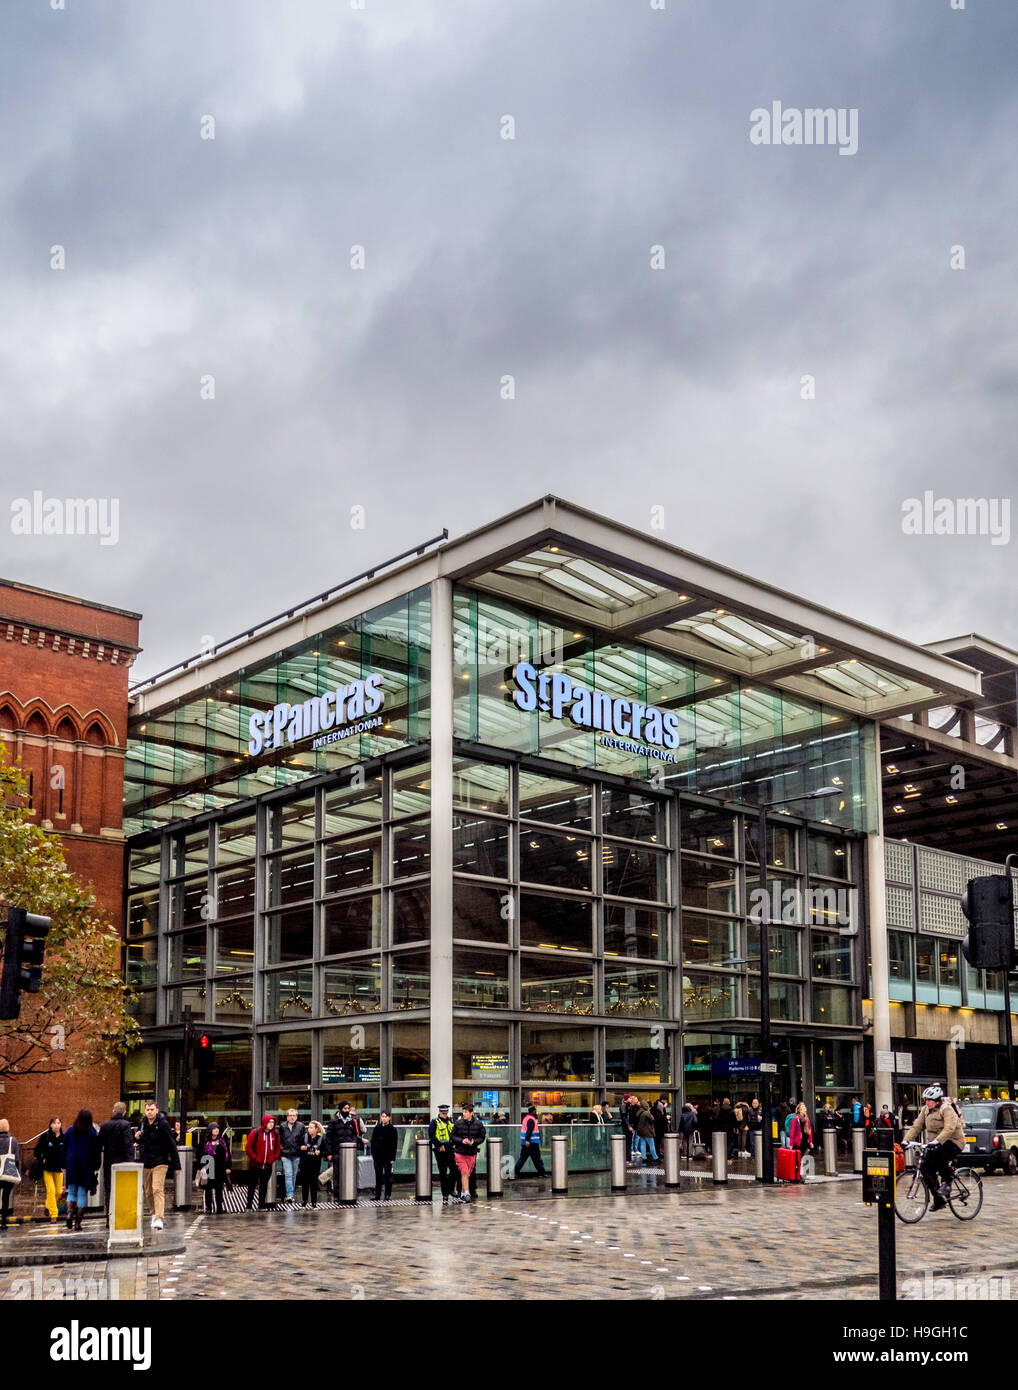 Bahnhof St. Pancras International. Moderne Glas-Erweiterung für den ursprünglichen Aufbau, London, UK. Stockfoto